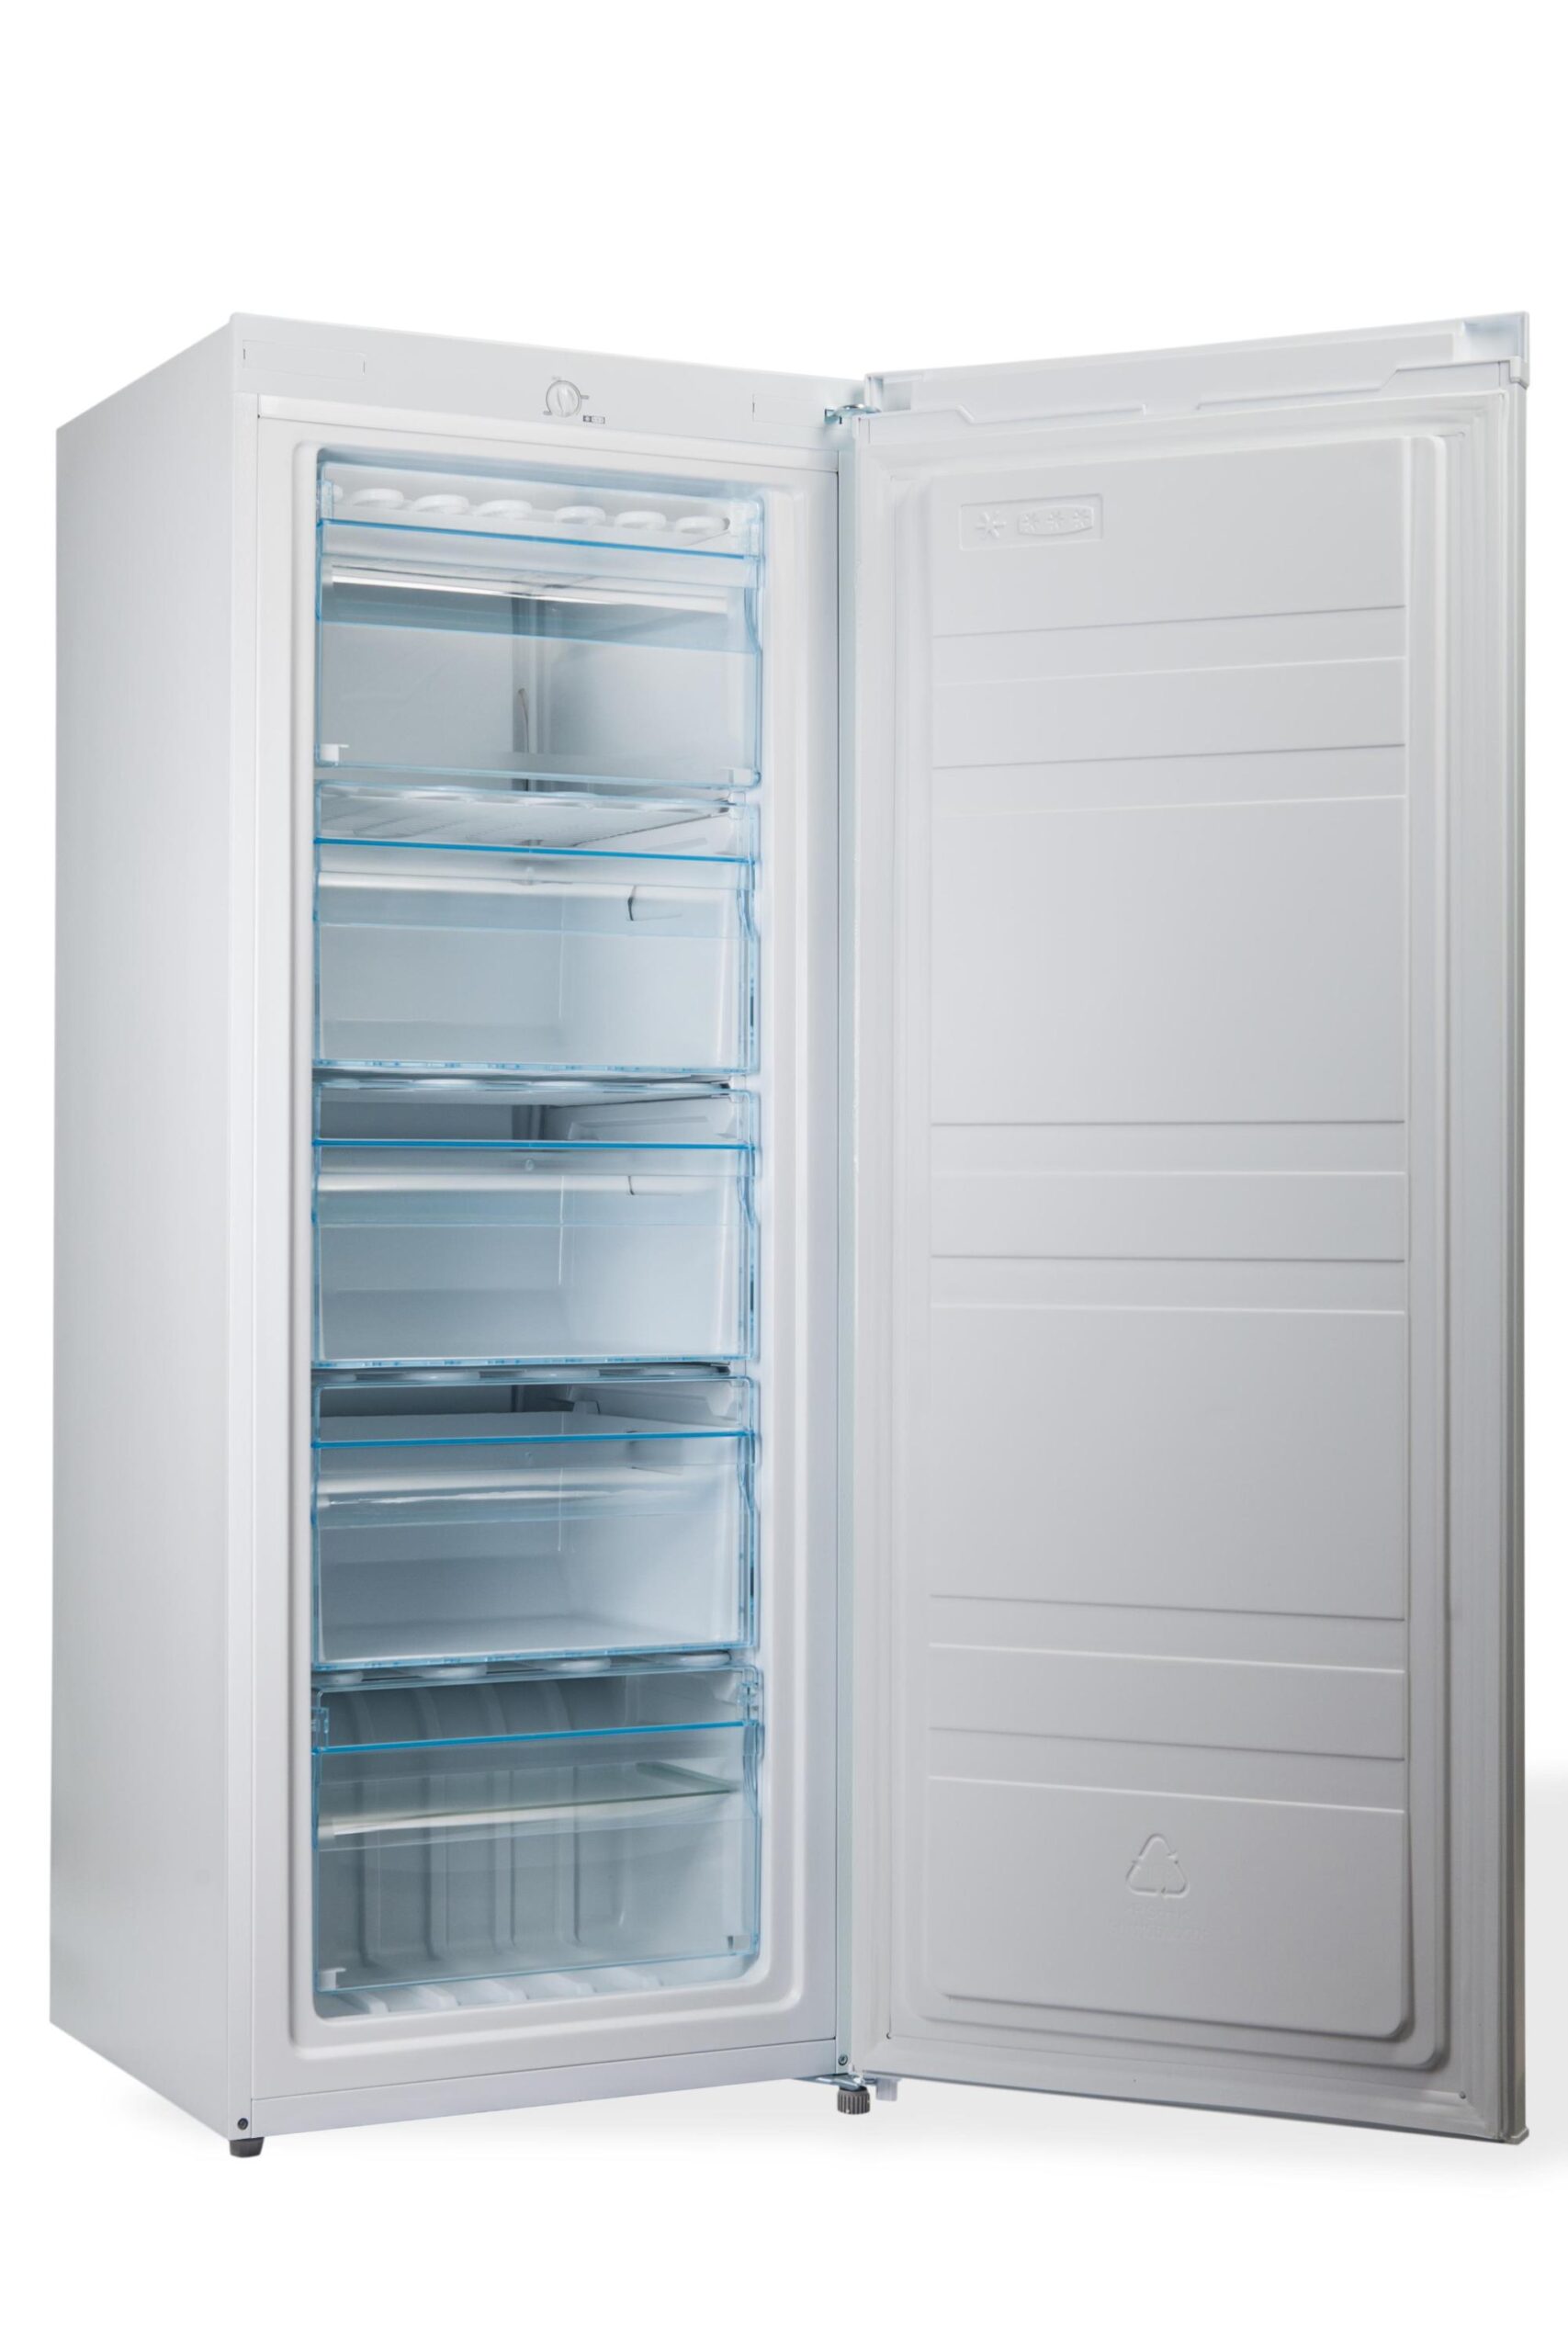 PremierTech PT-FR153 Congelatore Verticale Freezer 160 litri -24°gradi Classe E 4**** Stelle 3 Cassetti e 2 Sportelli